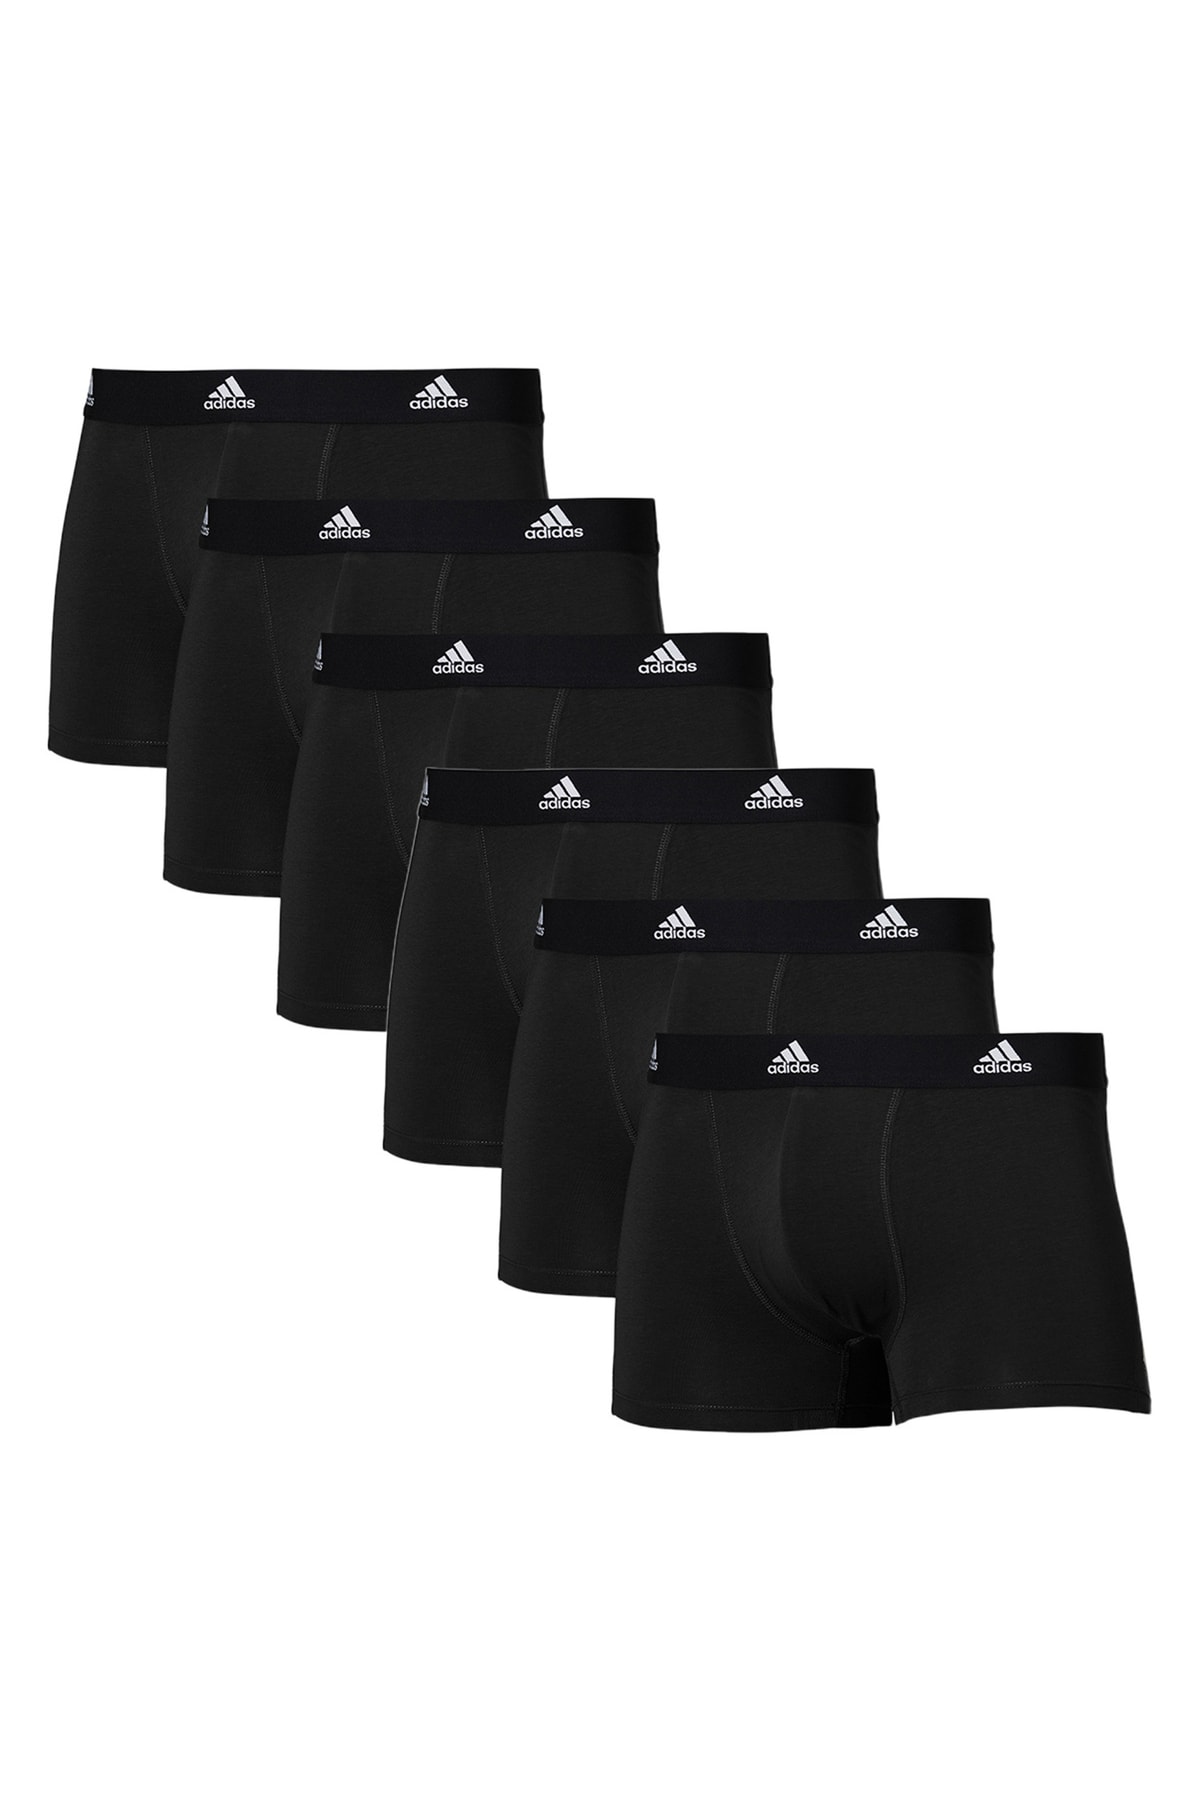 Adidas Sportswear Boxershorts Schwarz 6 St Fast ausverkauft